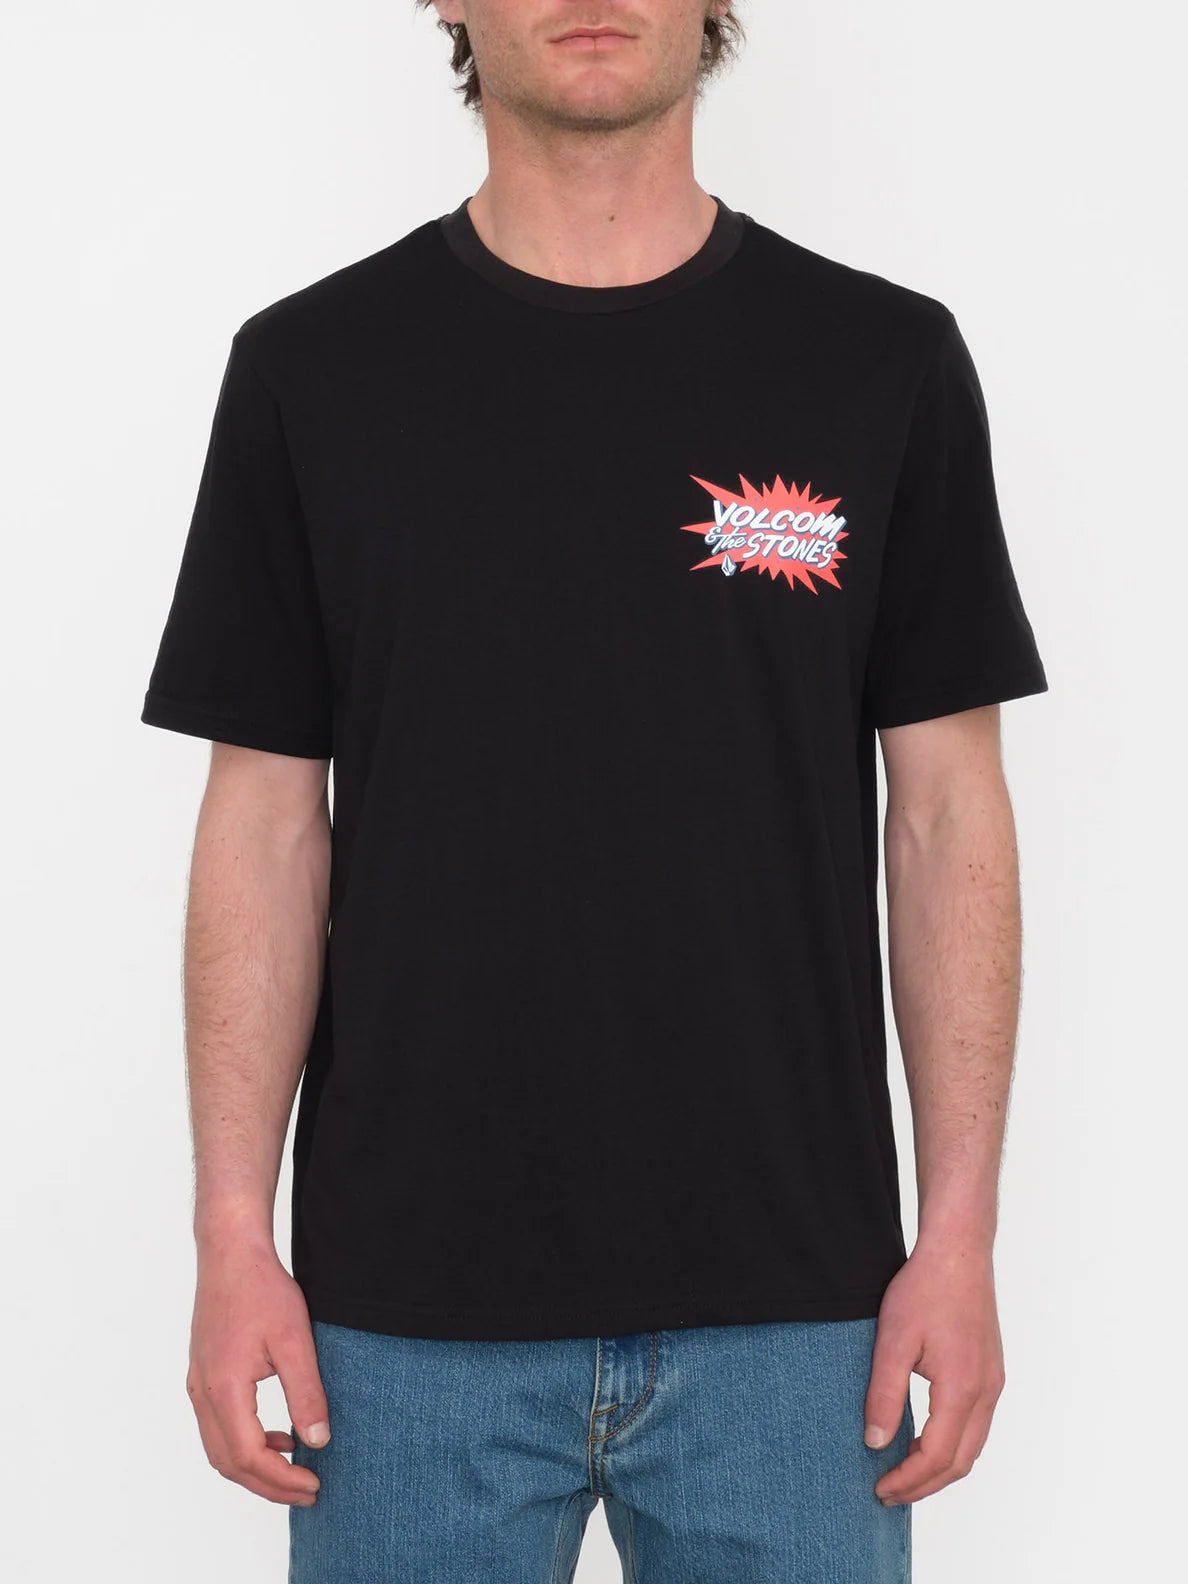 Volcom Strange Relics T-Shirt - Schwarz | Herren-T-Shirts | Kurzarm-T-Shirts für Herren | Meistverkaufte Produkte | Neue Produkte | Neueste Produkte | Sammlung_Zalando | Volcom-Shop | surfdevils.com